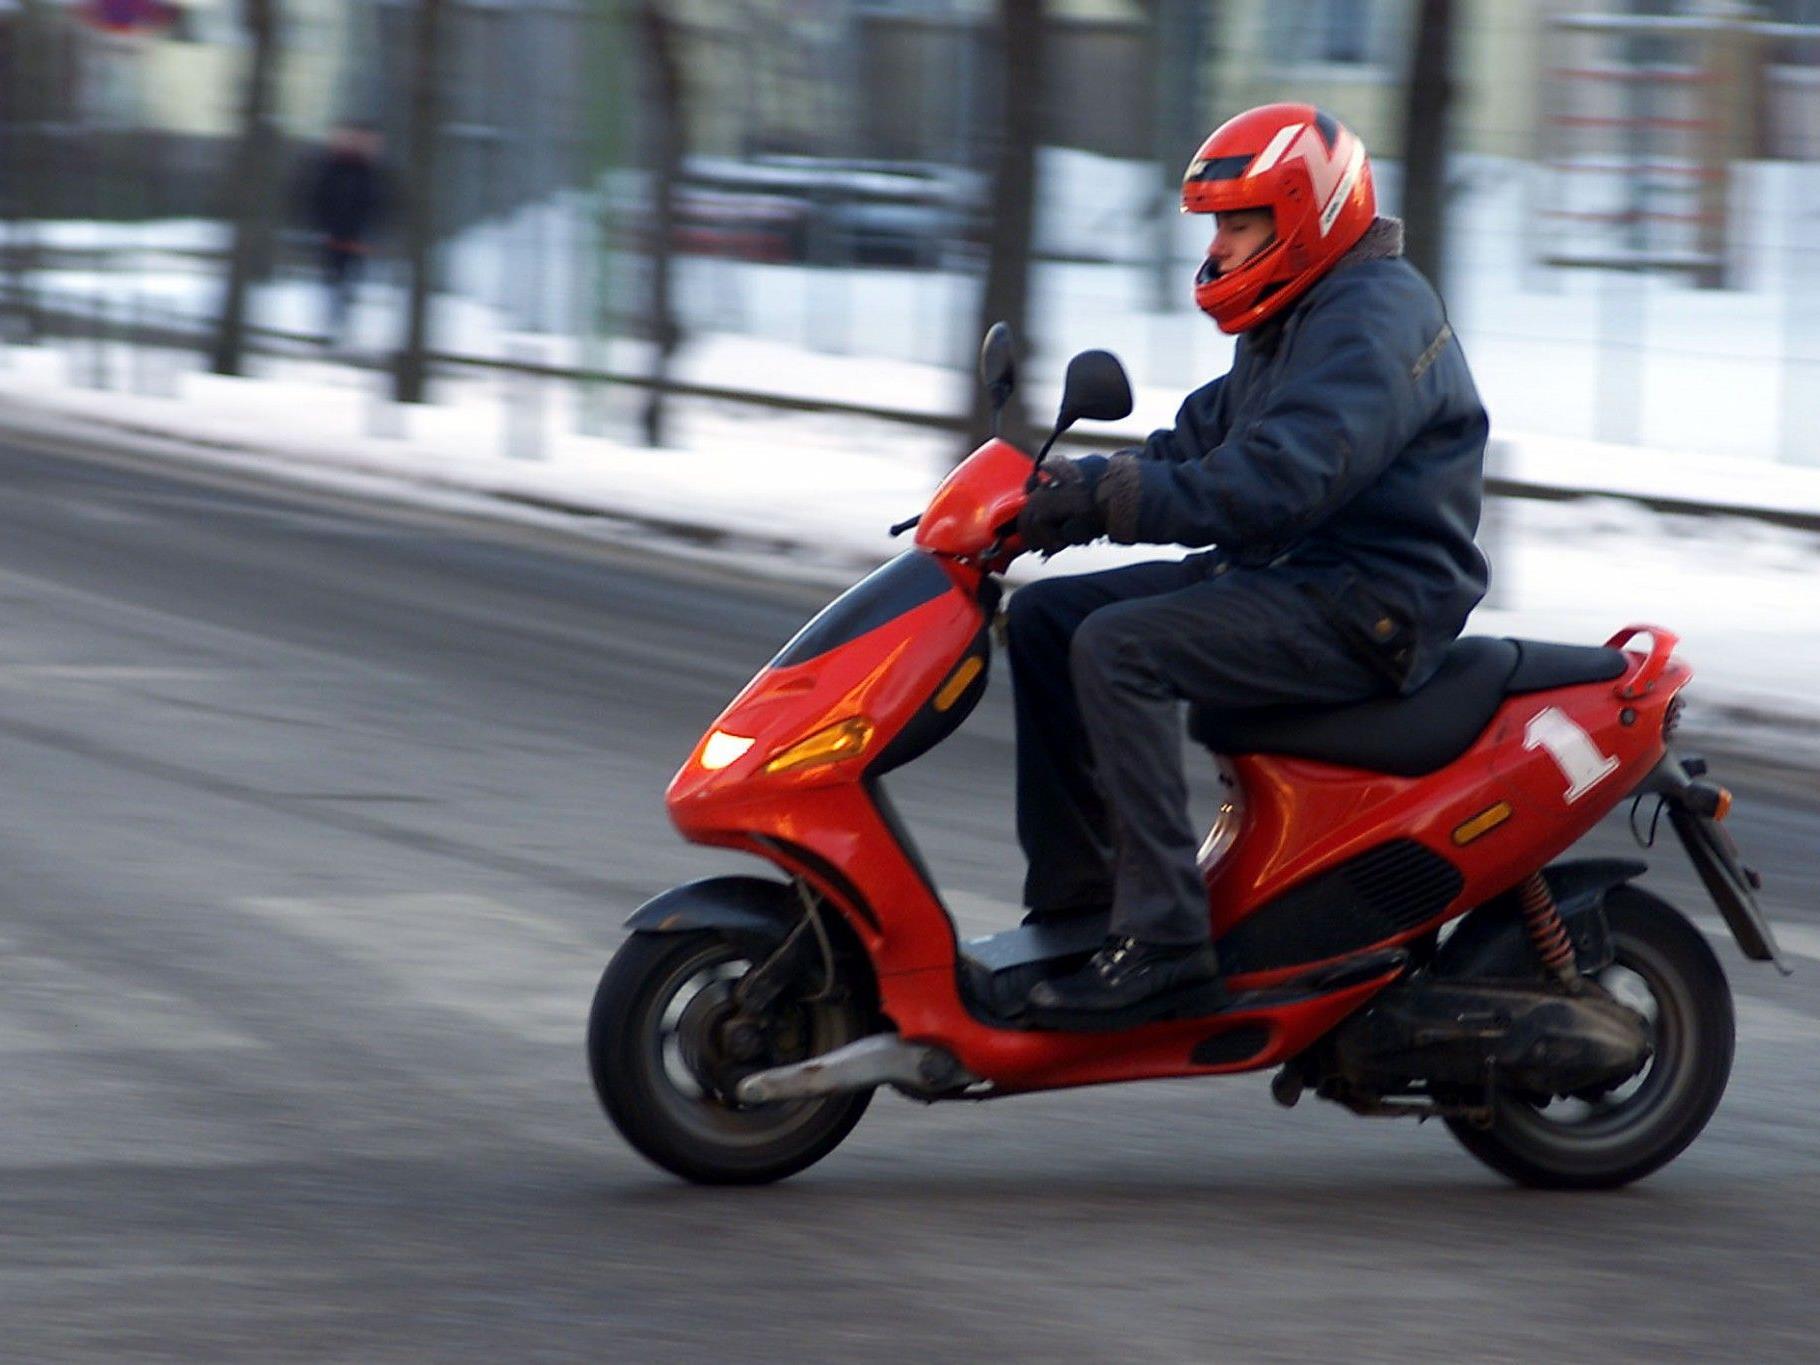 Der 16-Jährige fuhr mit seinem Moped 100 km/h.